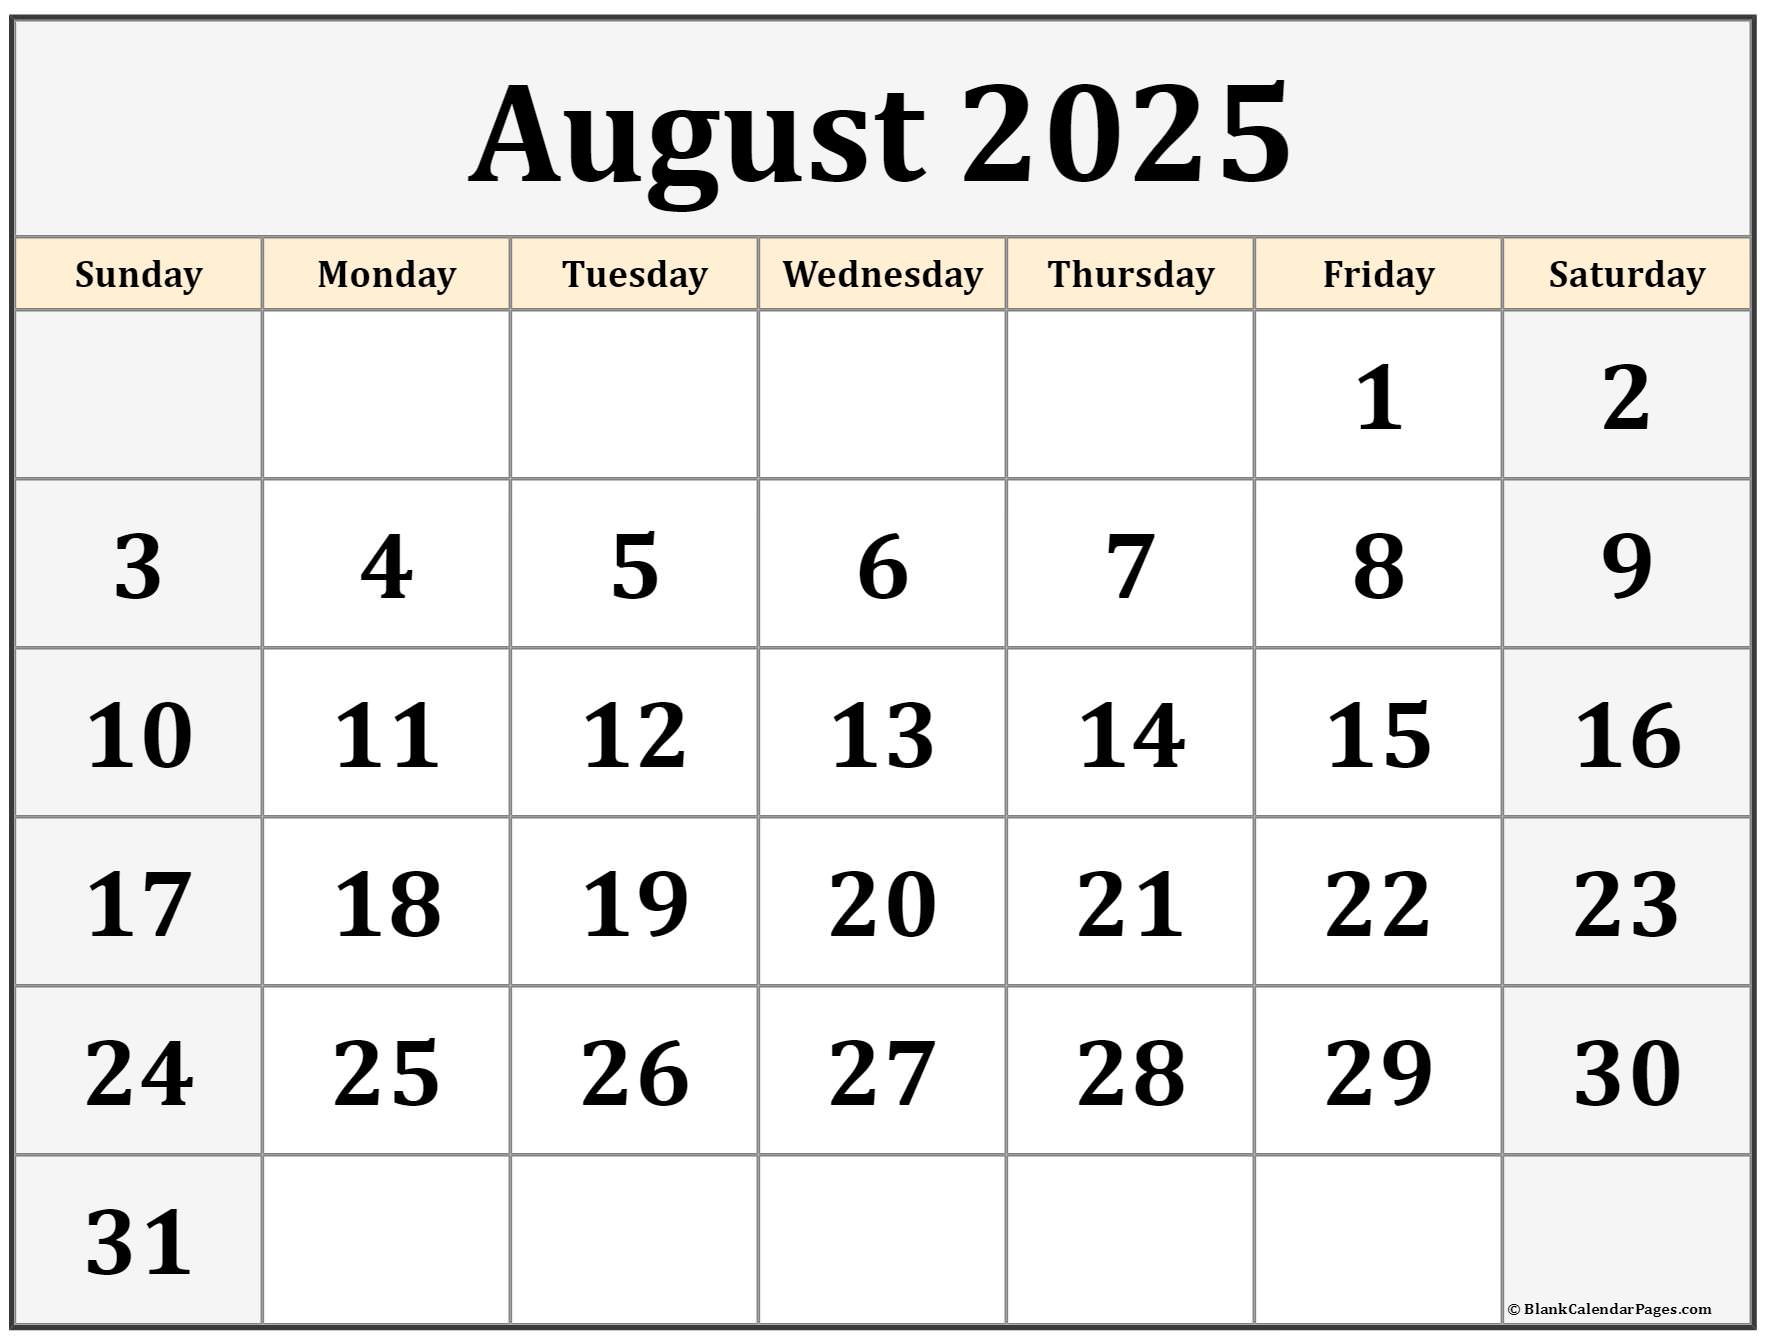 Wiki Calendar August 2025 